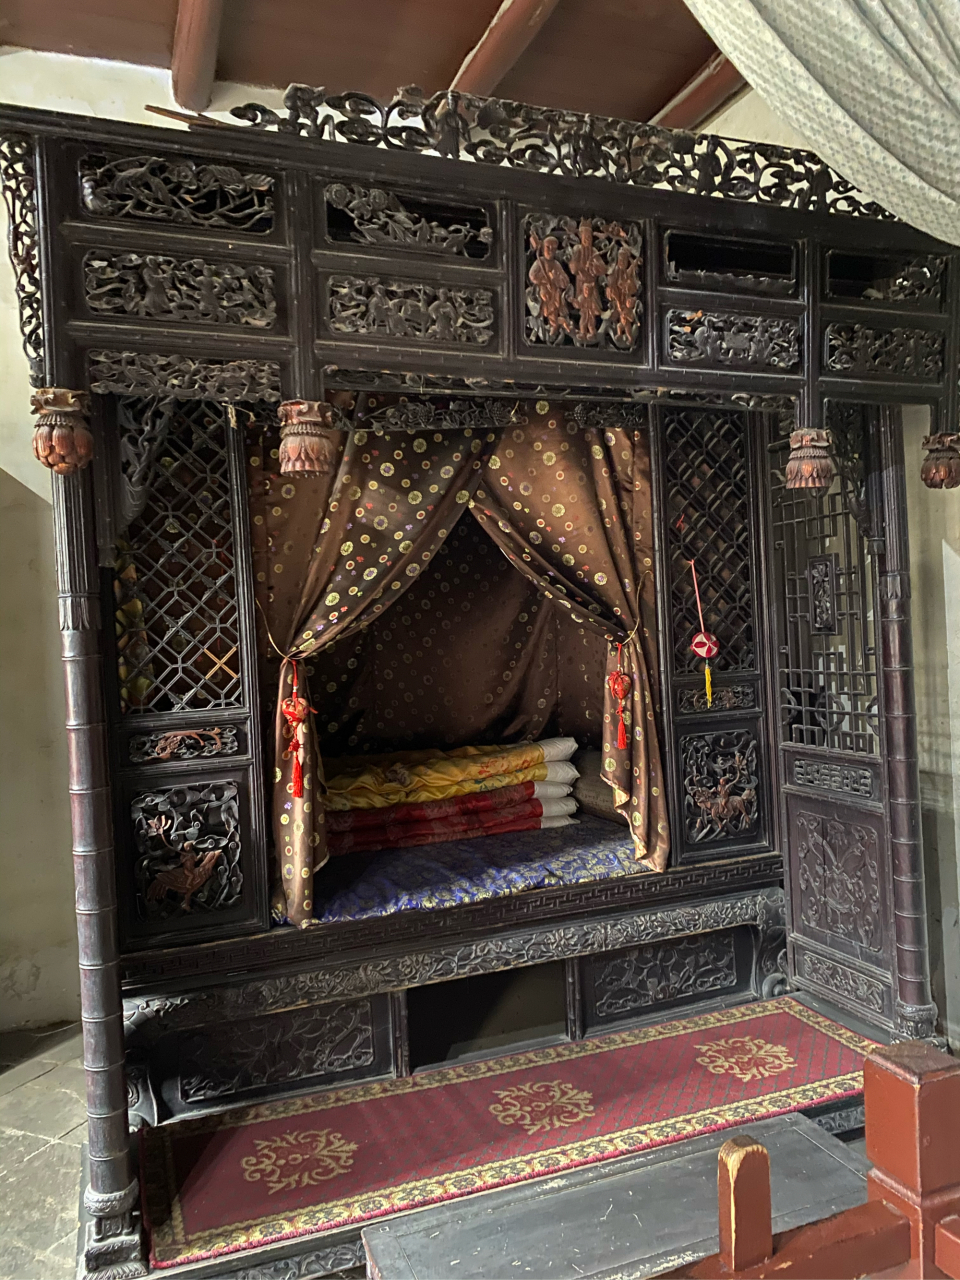 这个无价之宝的床,是慈禧太后梦寐以求都想得到的,有300多年的历史了